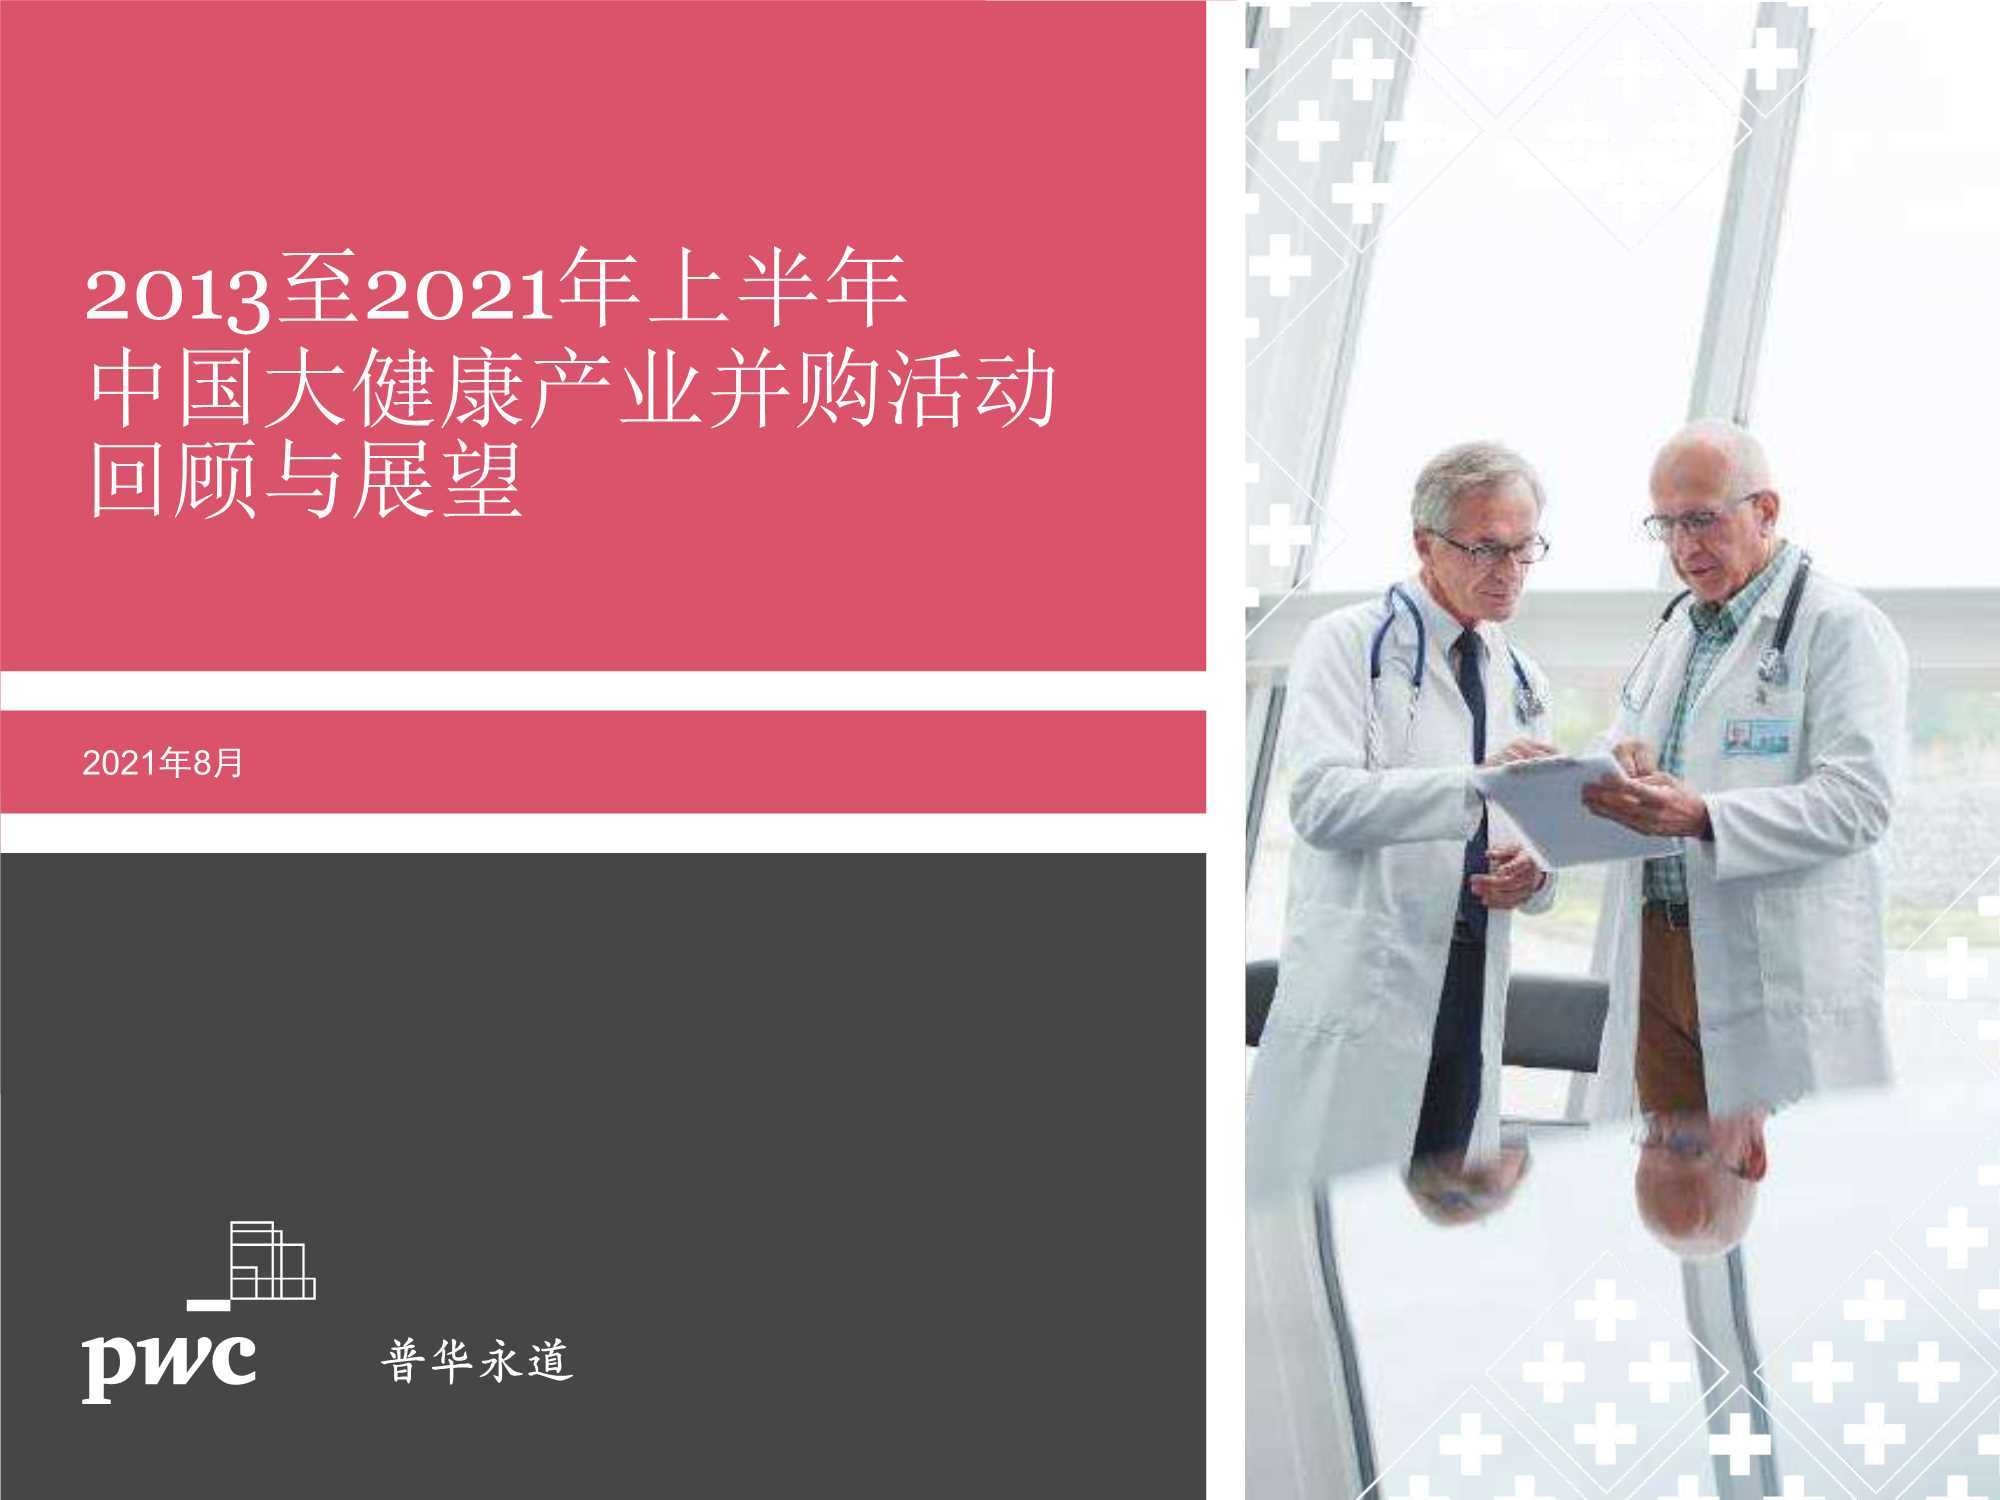 普华永道-2013年~2021年上半年中国大健康产业并购活动回顾与展望-2021.09-27页